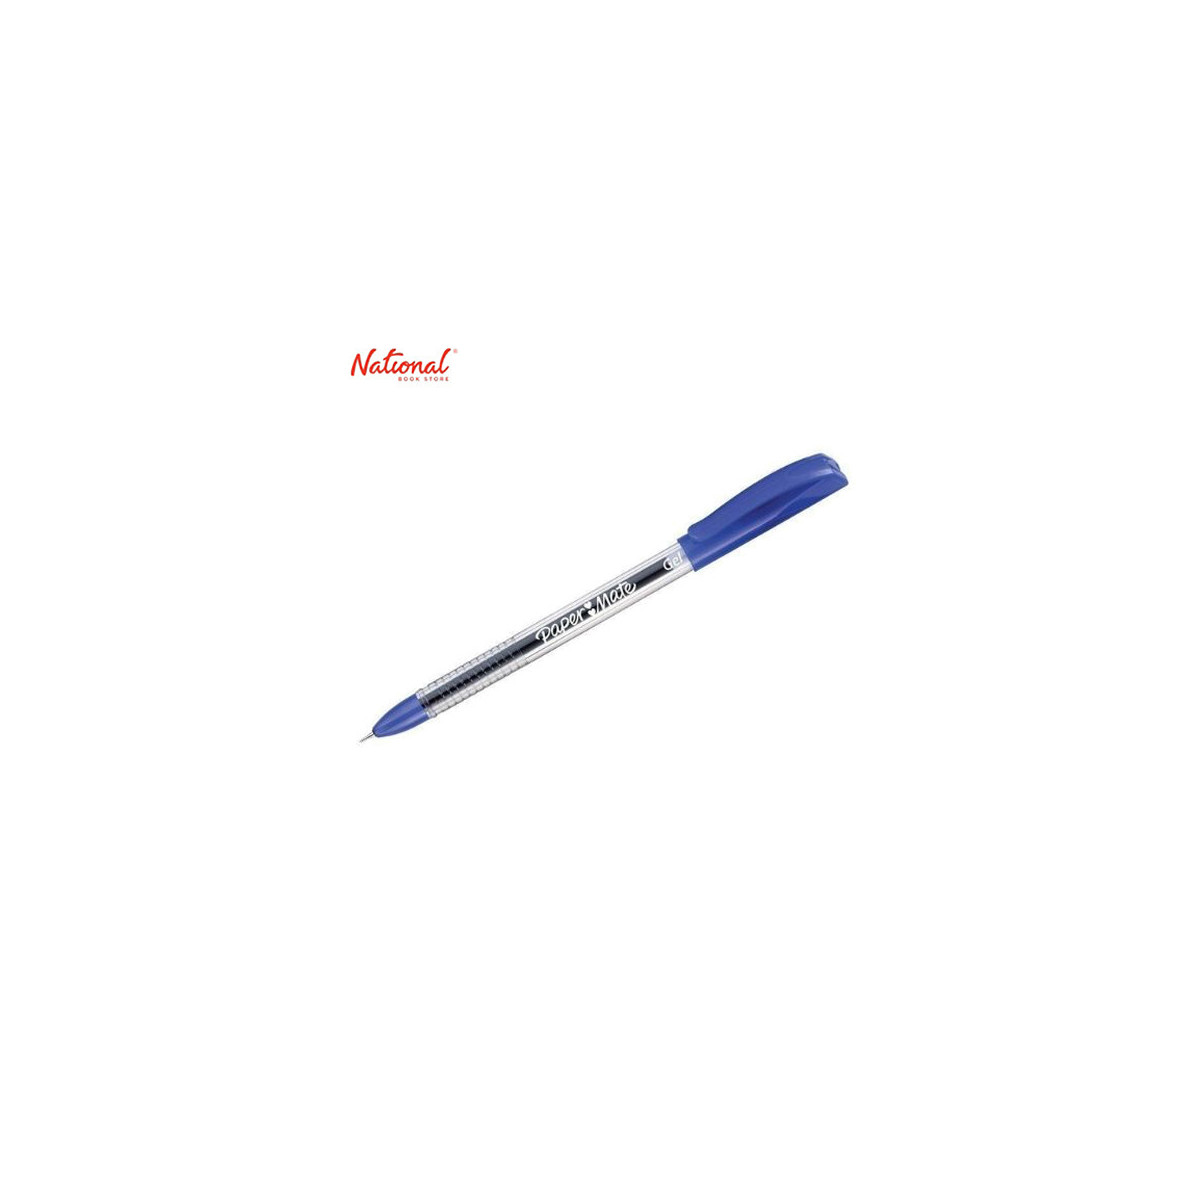 Papermate Jiffy Gel Pen Blue 04020924